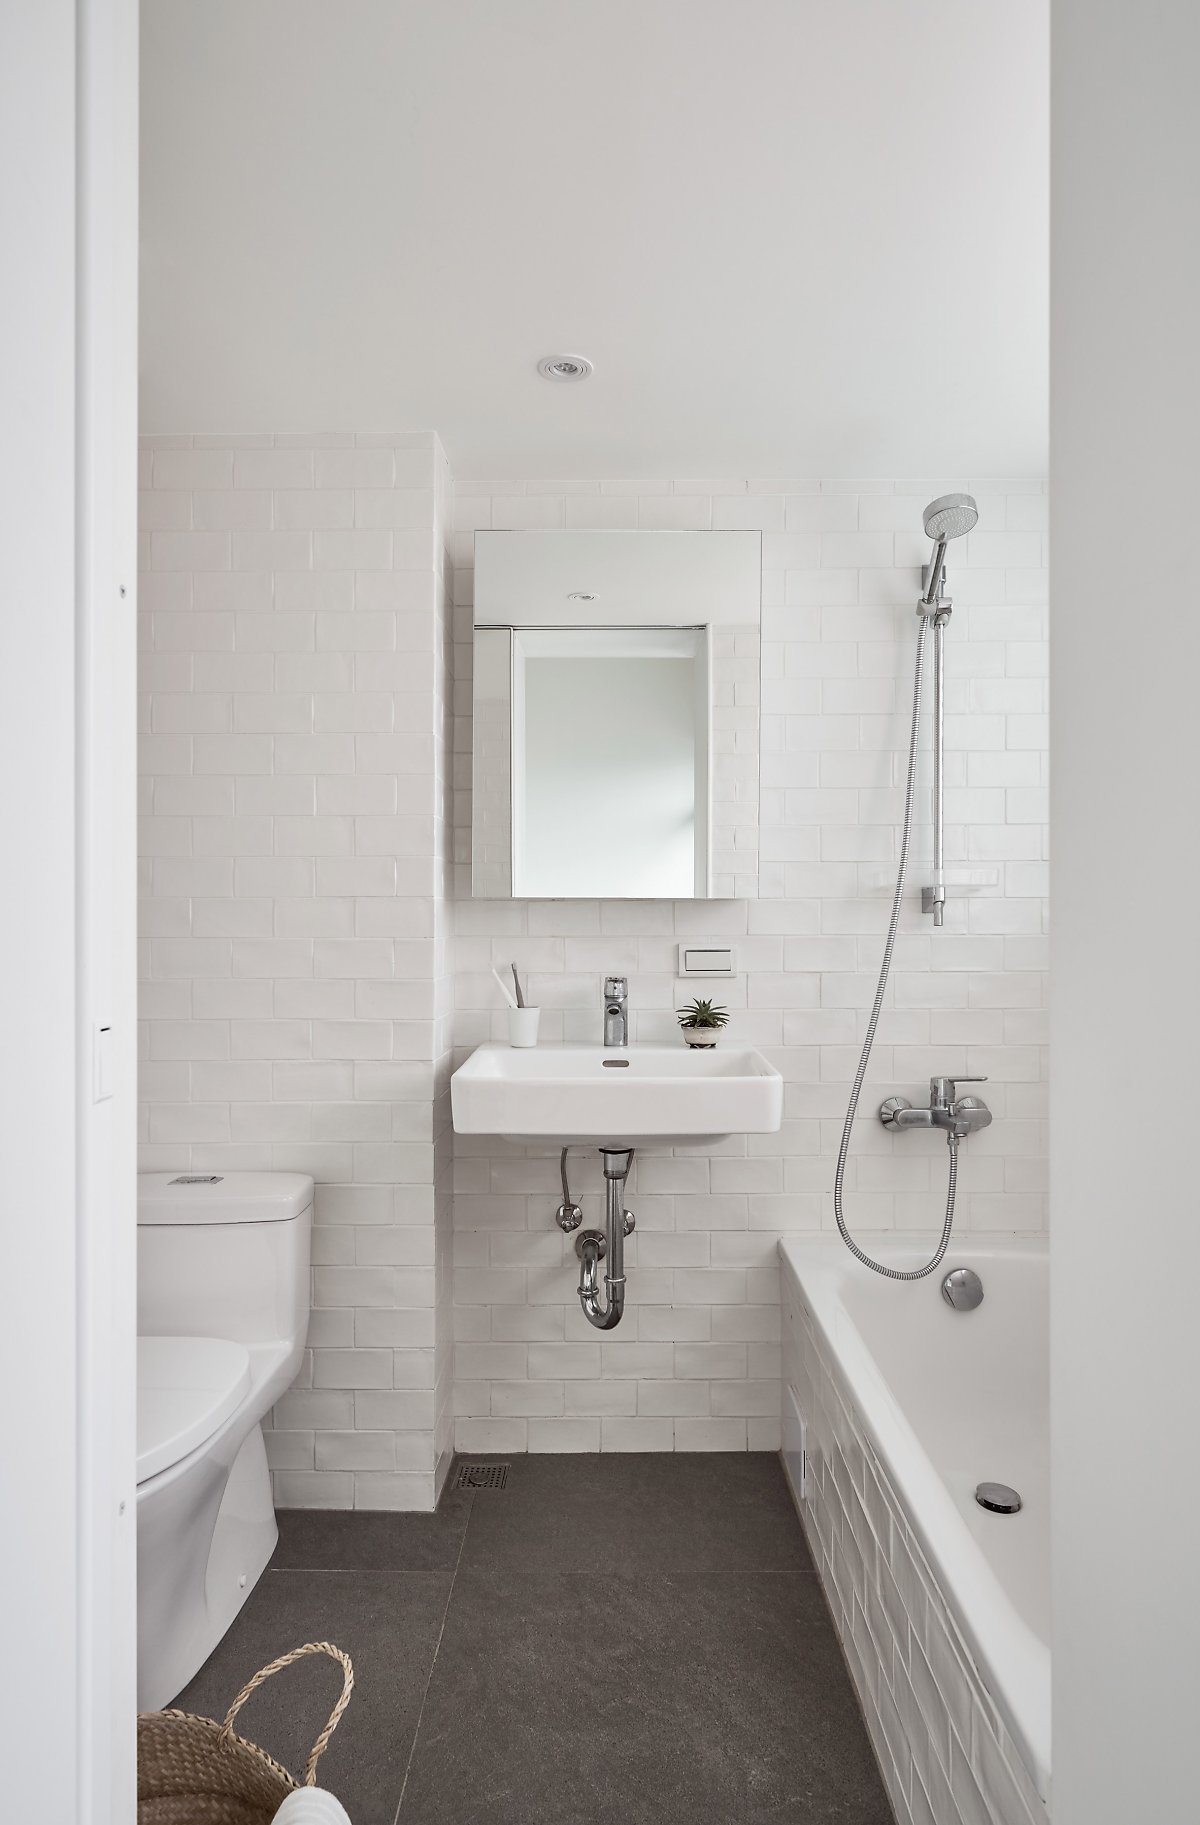 Phòng tắm tươi sáng nhờ sắc trắng của gạch ốp tường. Bồn rửa tay phân vùng toilet - bồn tắm một cách trực quan. Phía trên là tủ lưu trữ mặt gương giúp nhân đôi không gian và ánh sáng.